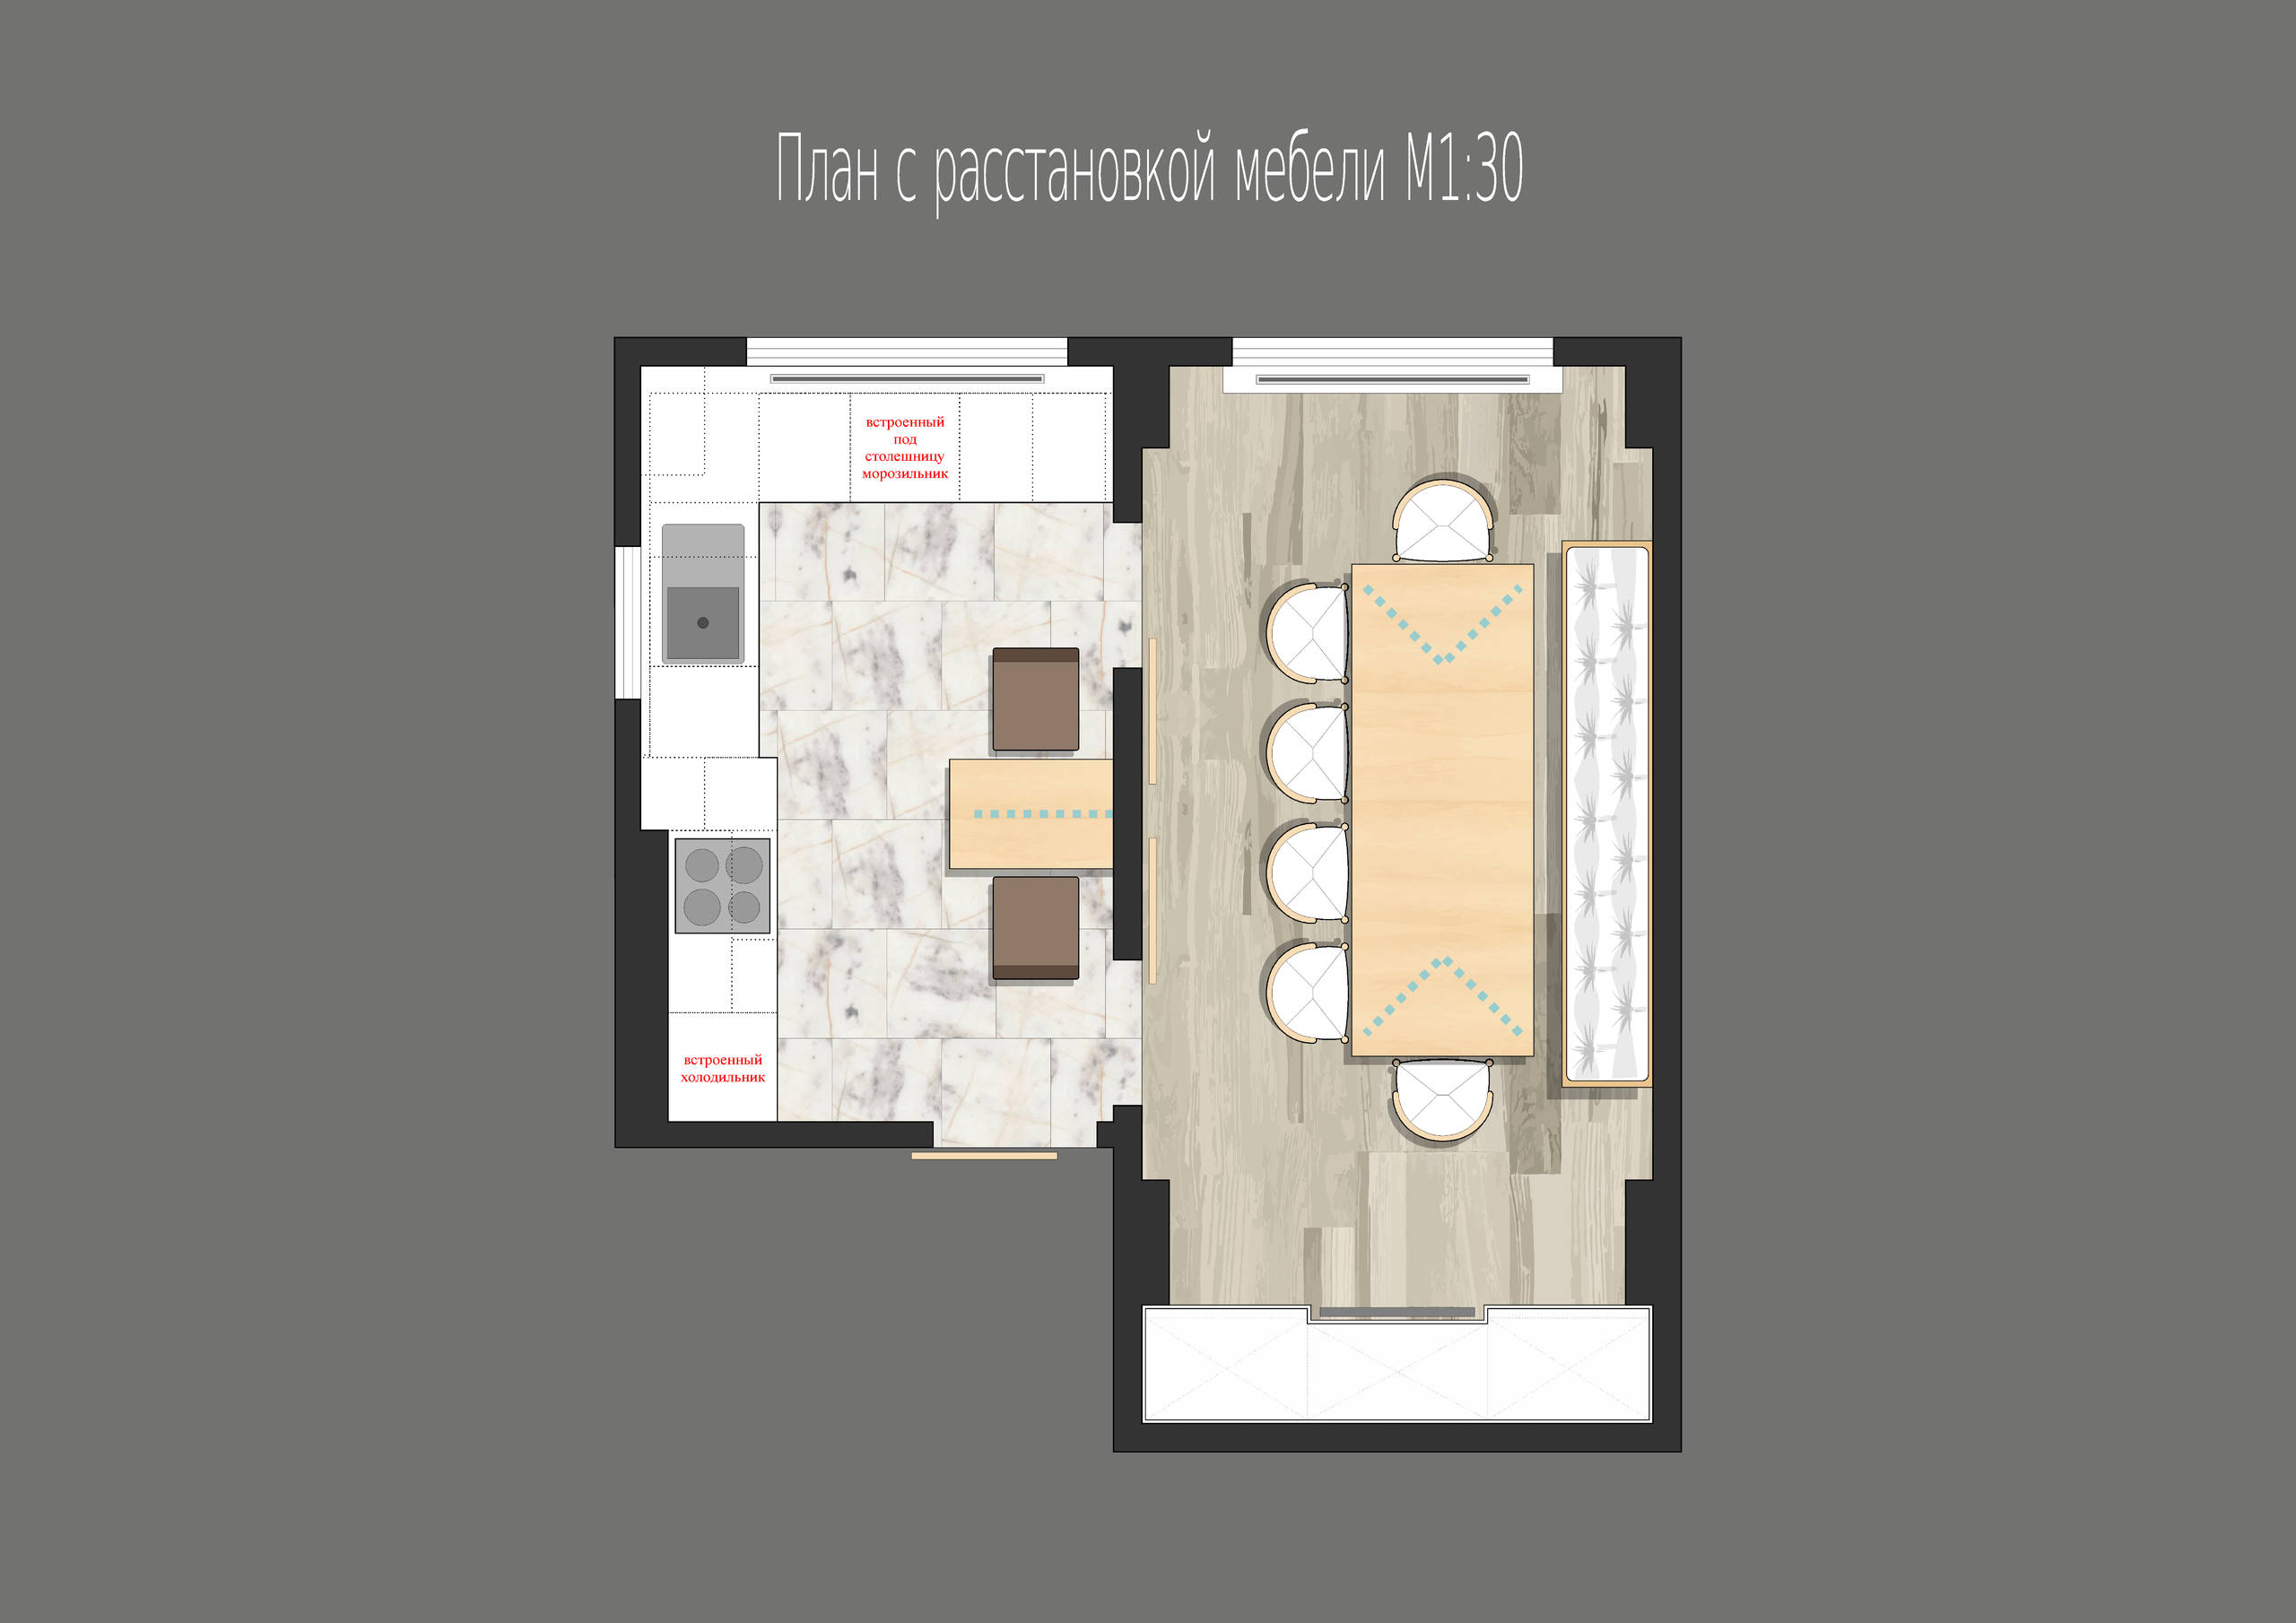 Дизайн интерьера уютной квартиры в стиле комфортный минимализм